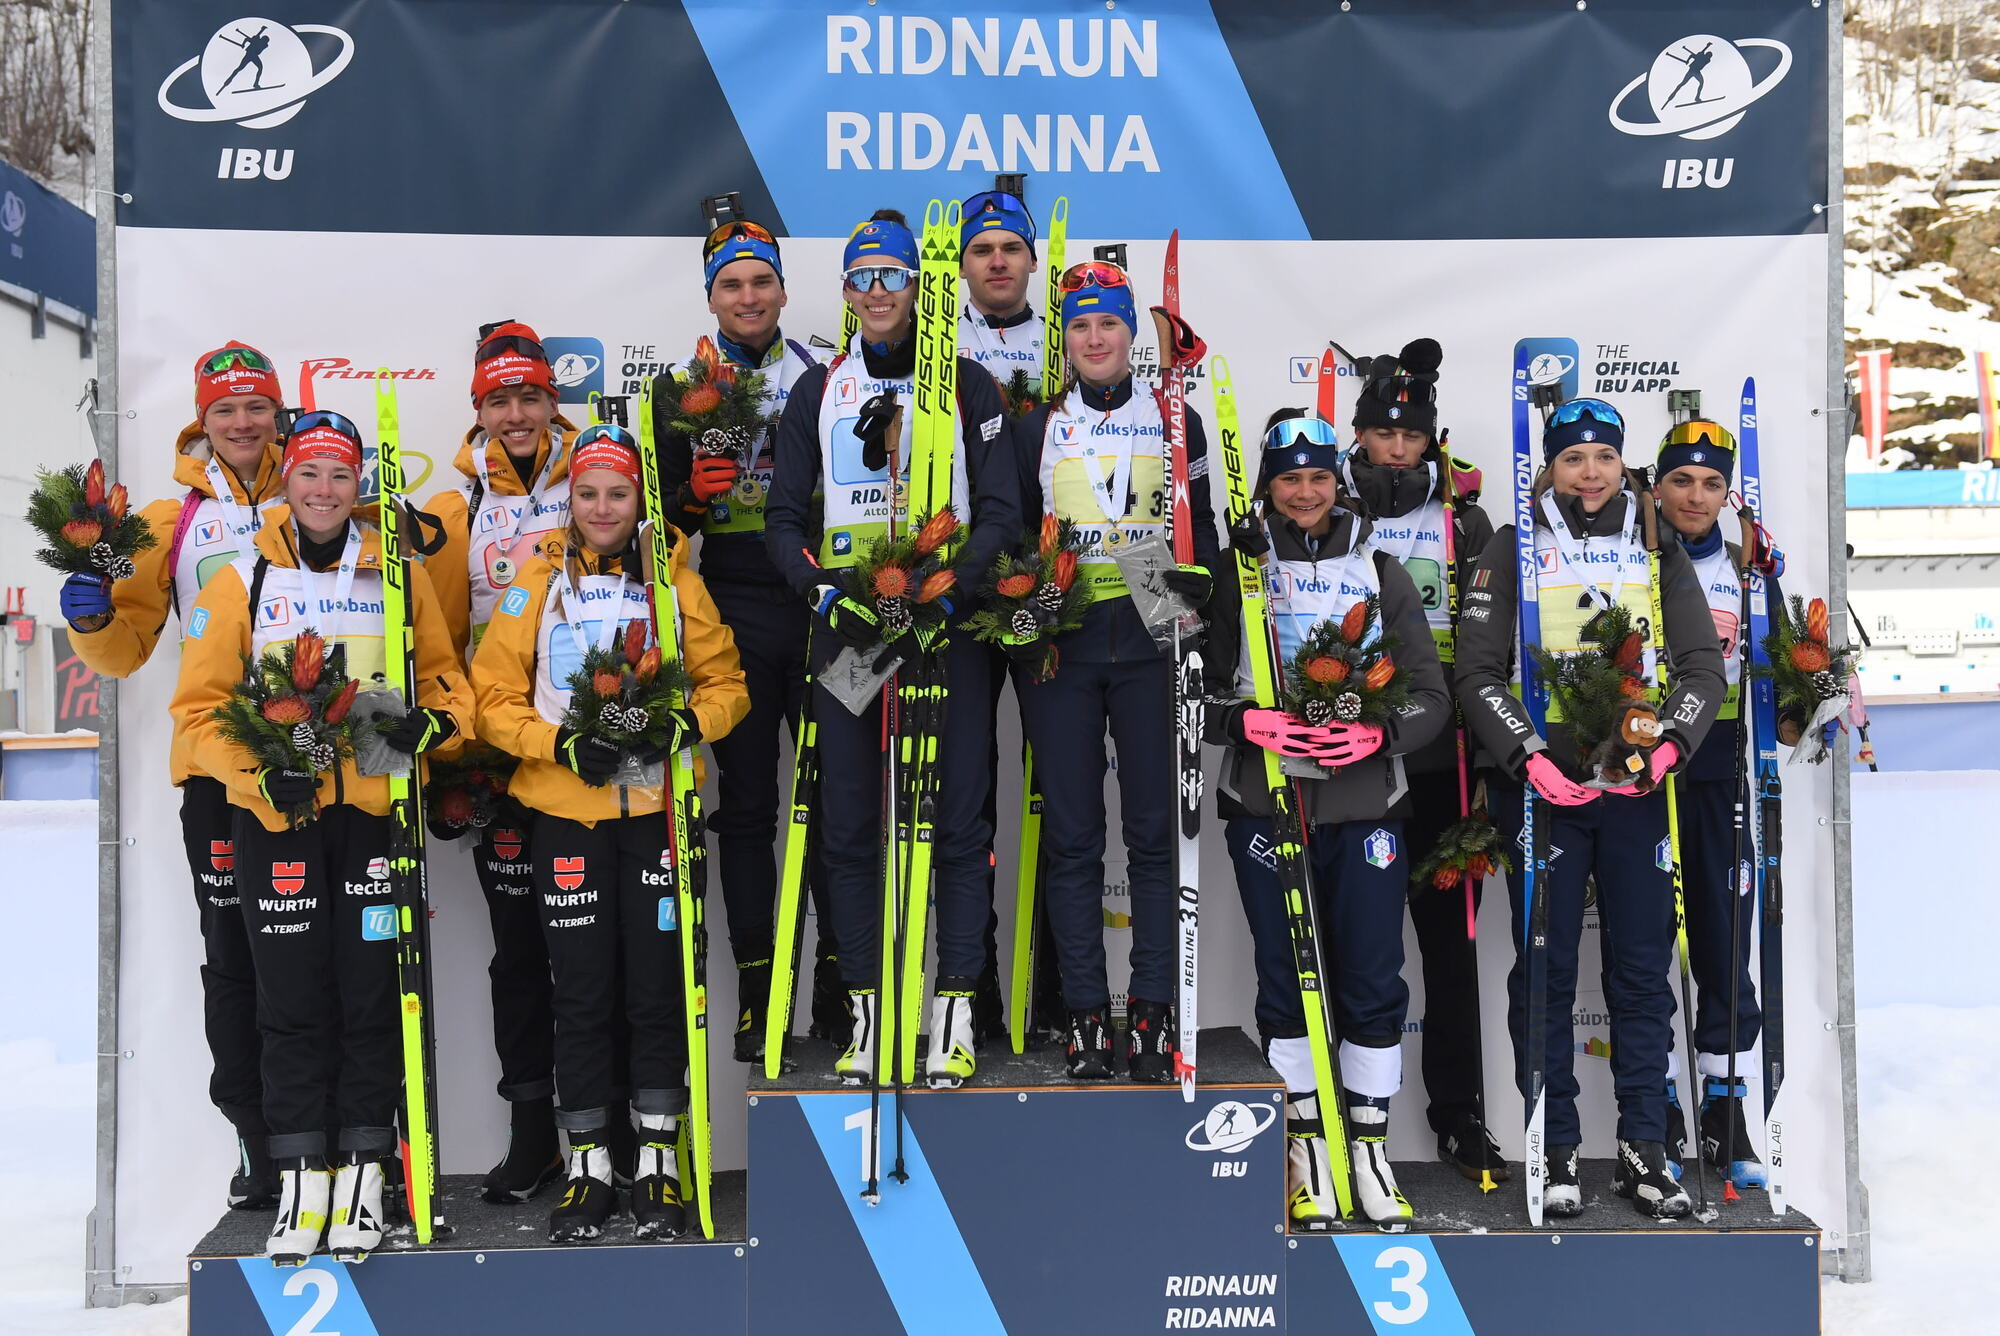 Ukraińska drużyna biathlonowa zdobywa złoto w sztafecie na Pucharze IBU